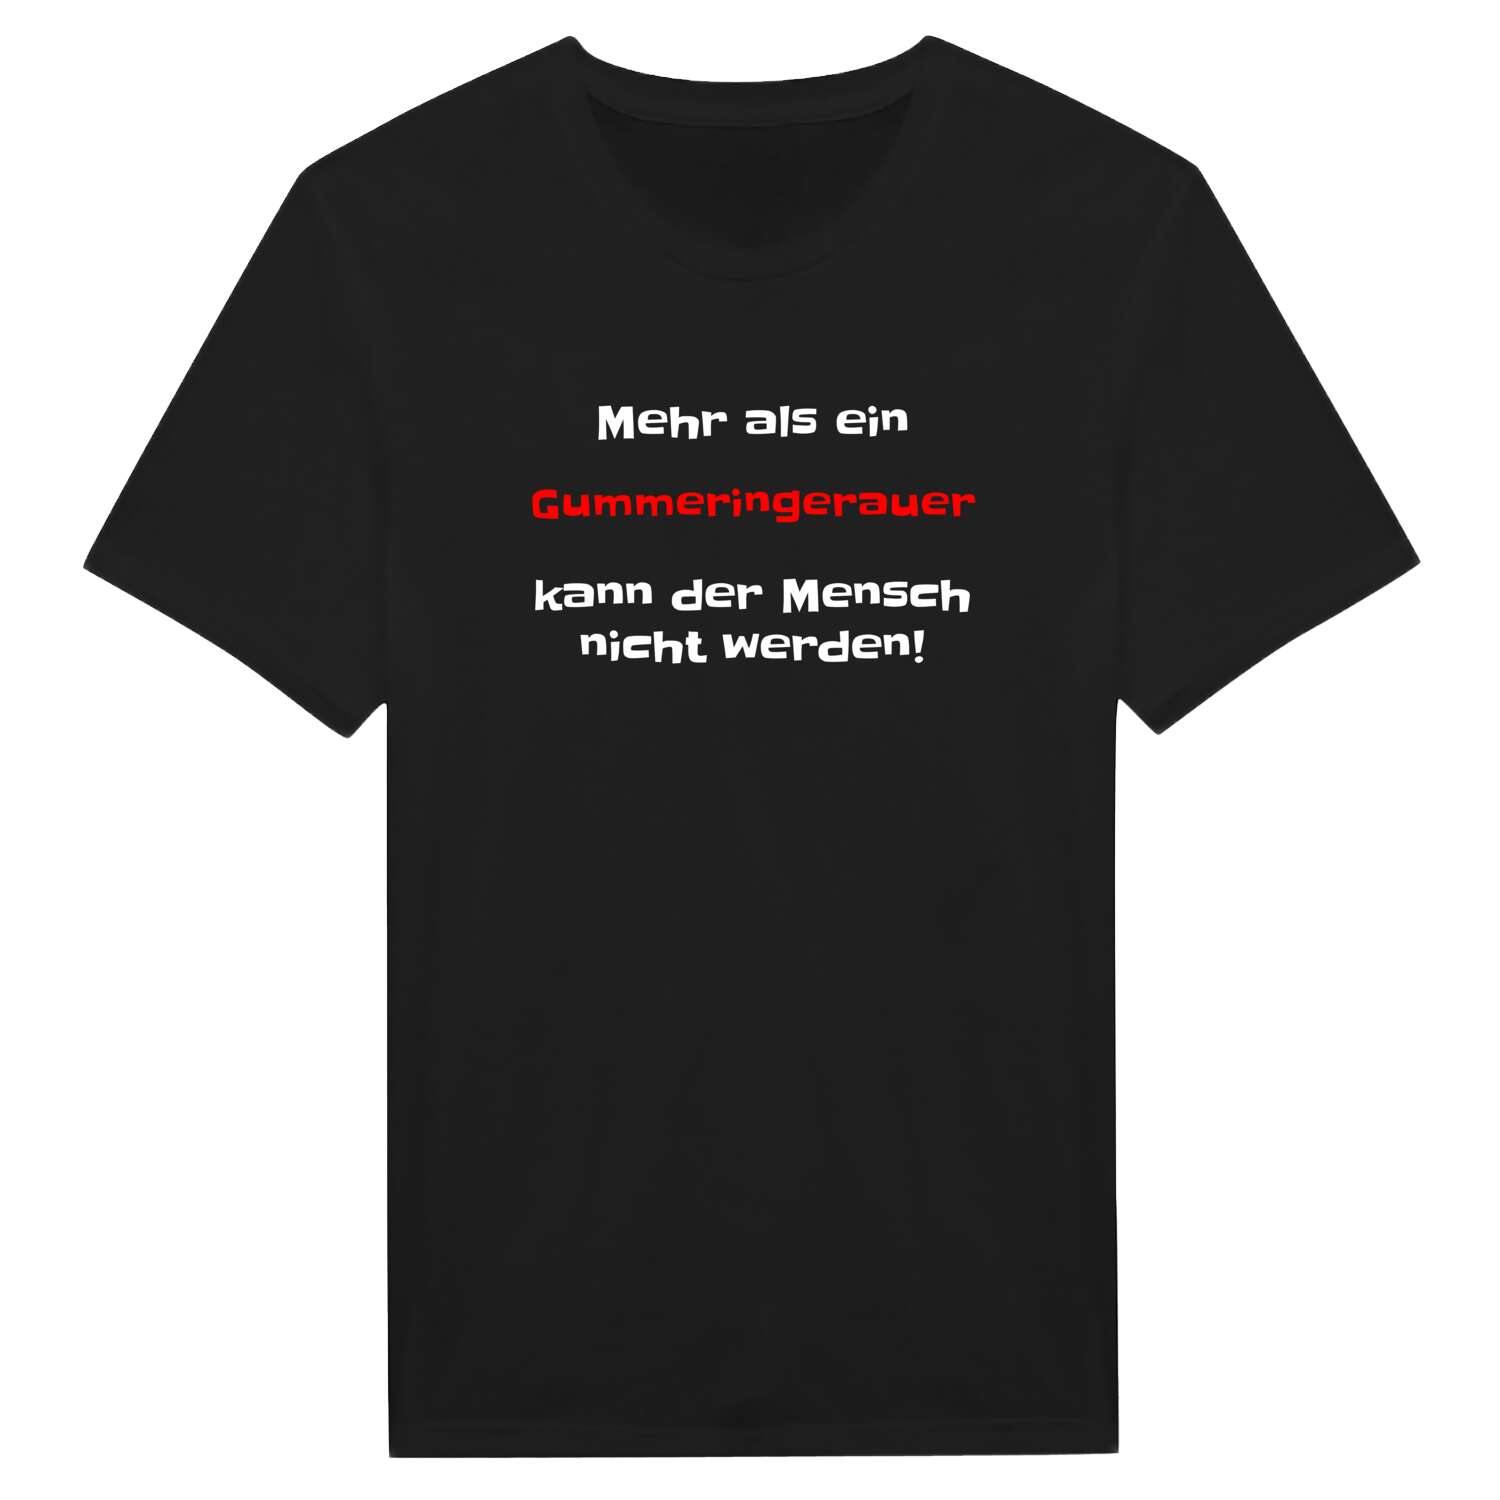 Gummeringerau T-Shirt »Mehr als ein«